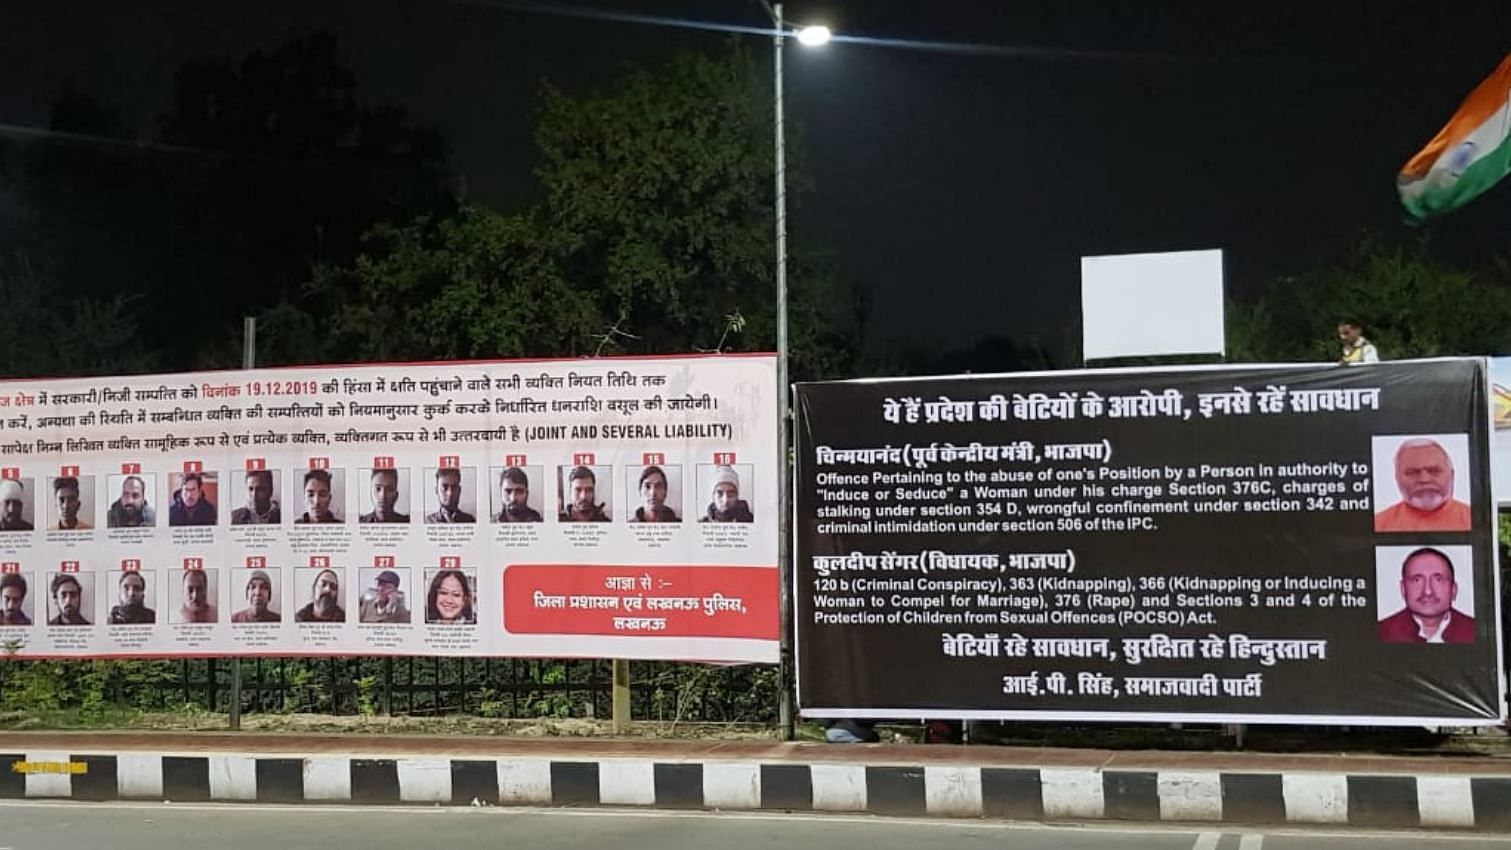 उत्तर प्रदेश में बीजेपी और समाजवादी पार्टी के बीच पोस्टर वॉर शुरू हो गया है